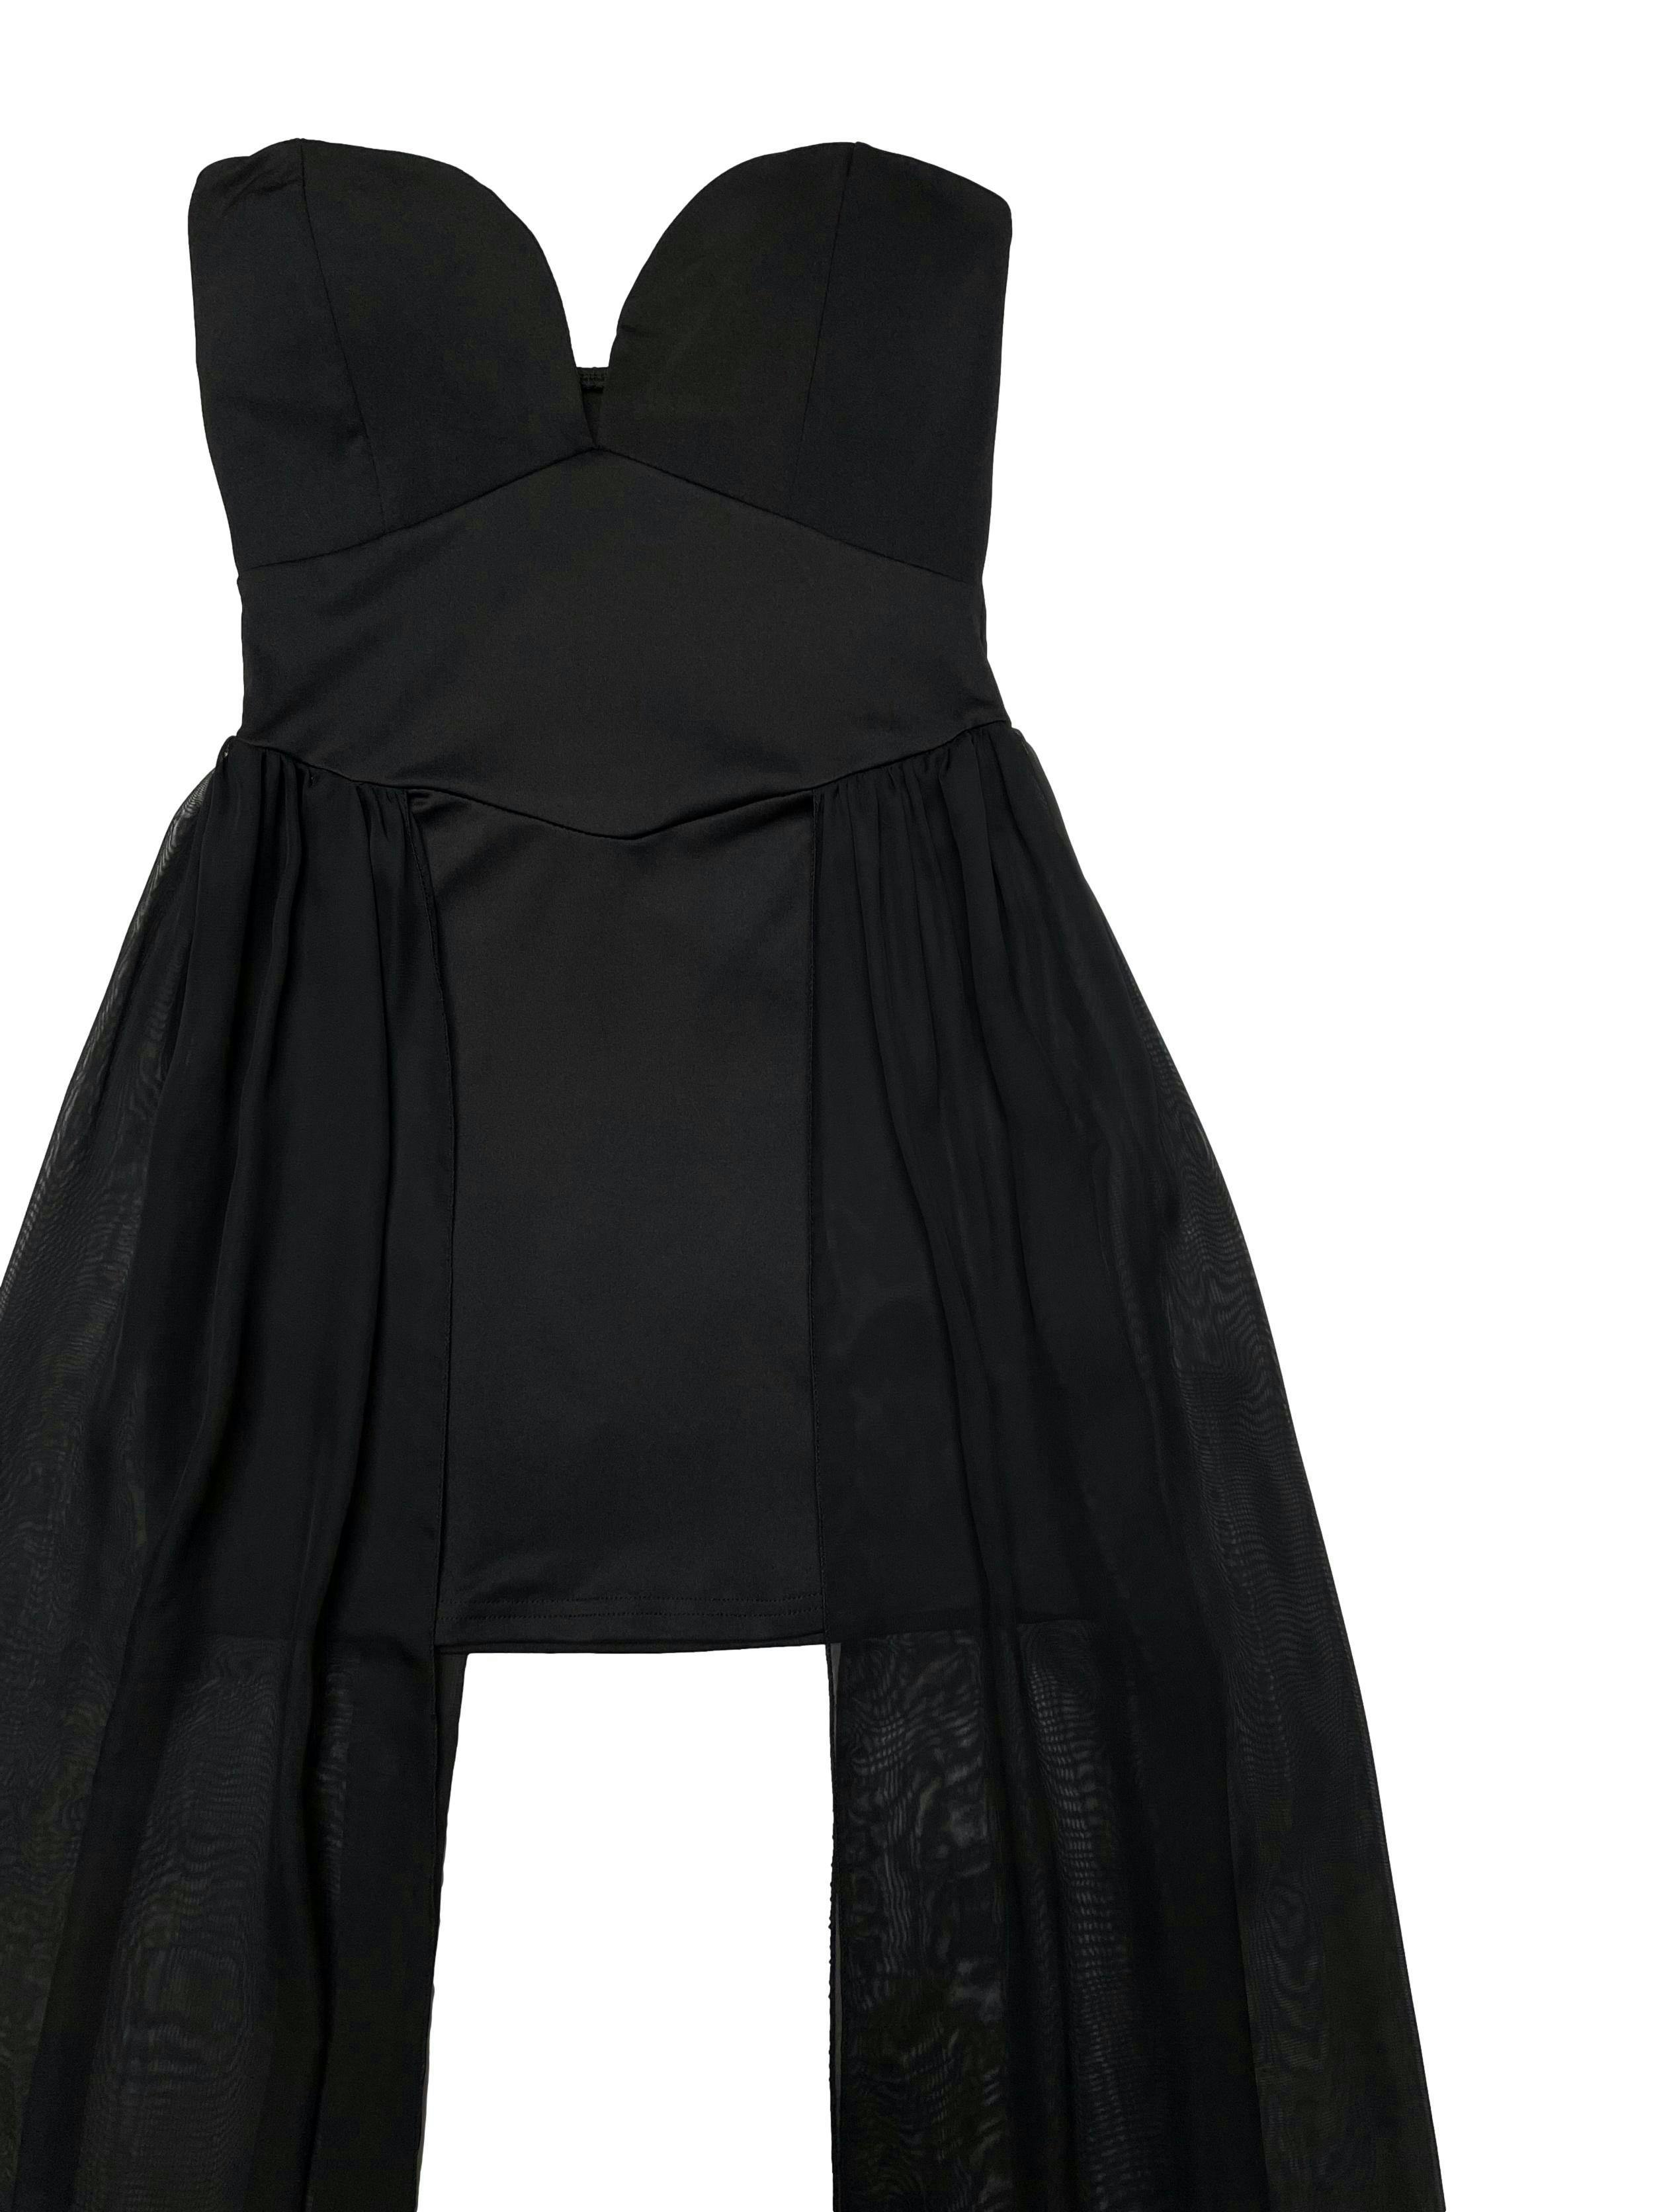 Vestido negro de lycra, escote corazón con copas, cierre lateral y capas de gasa en laterales. Largo 65-138cm